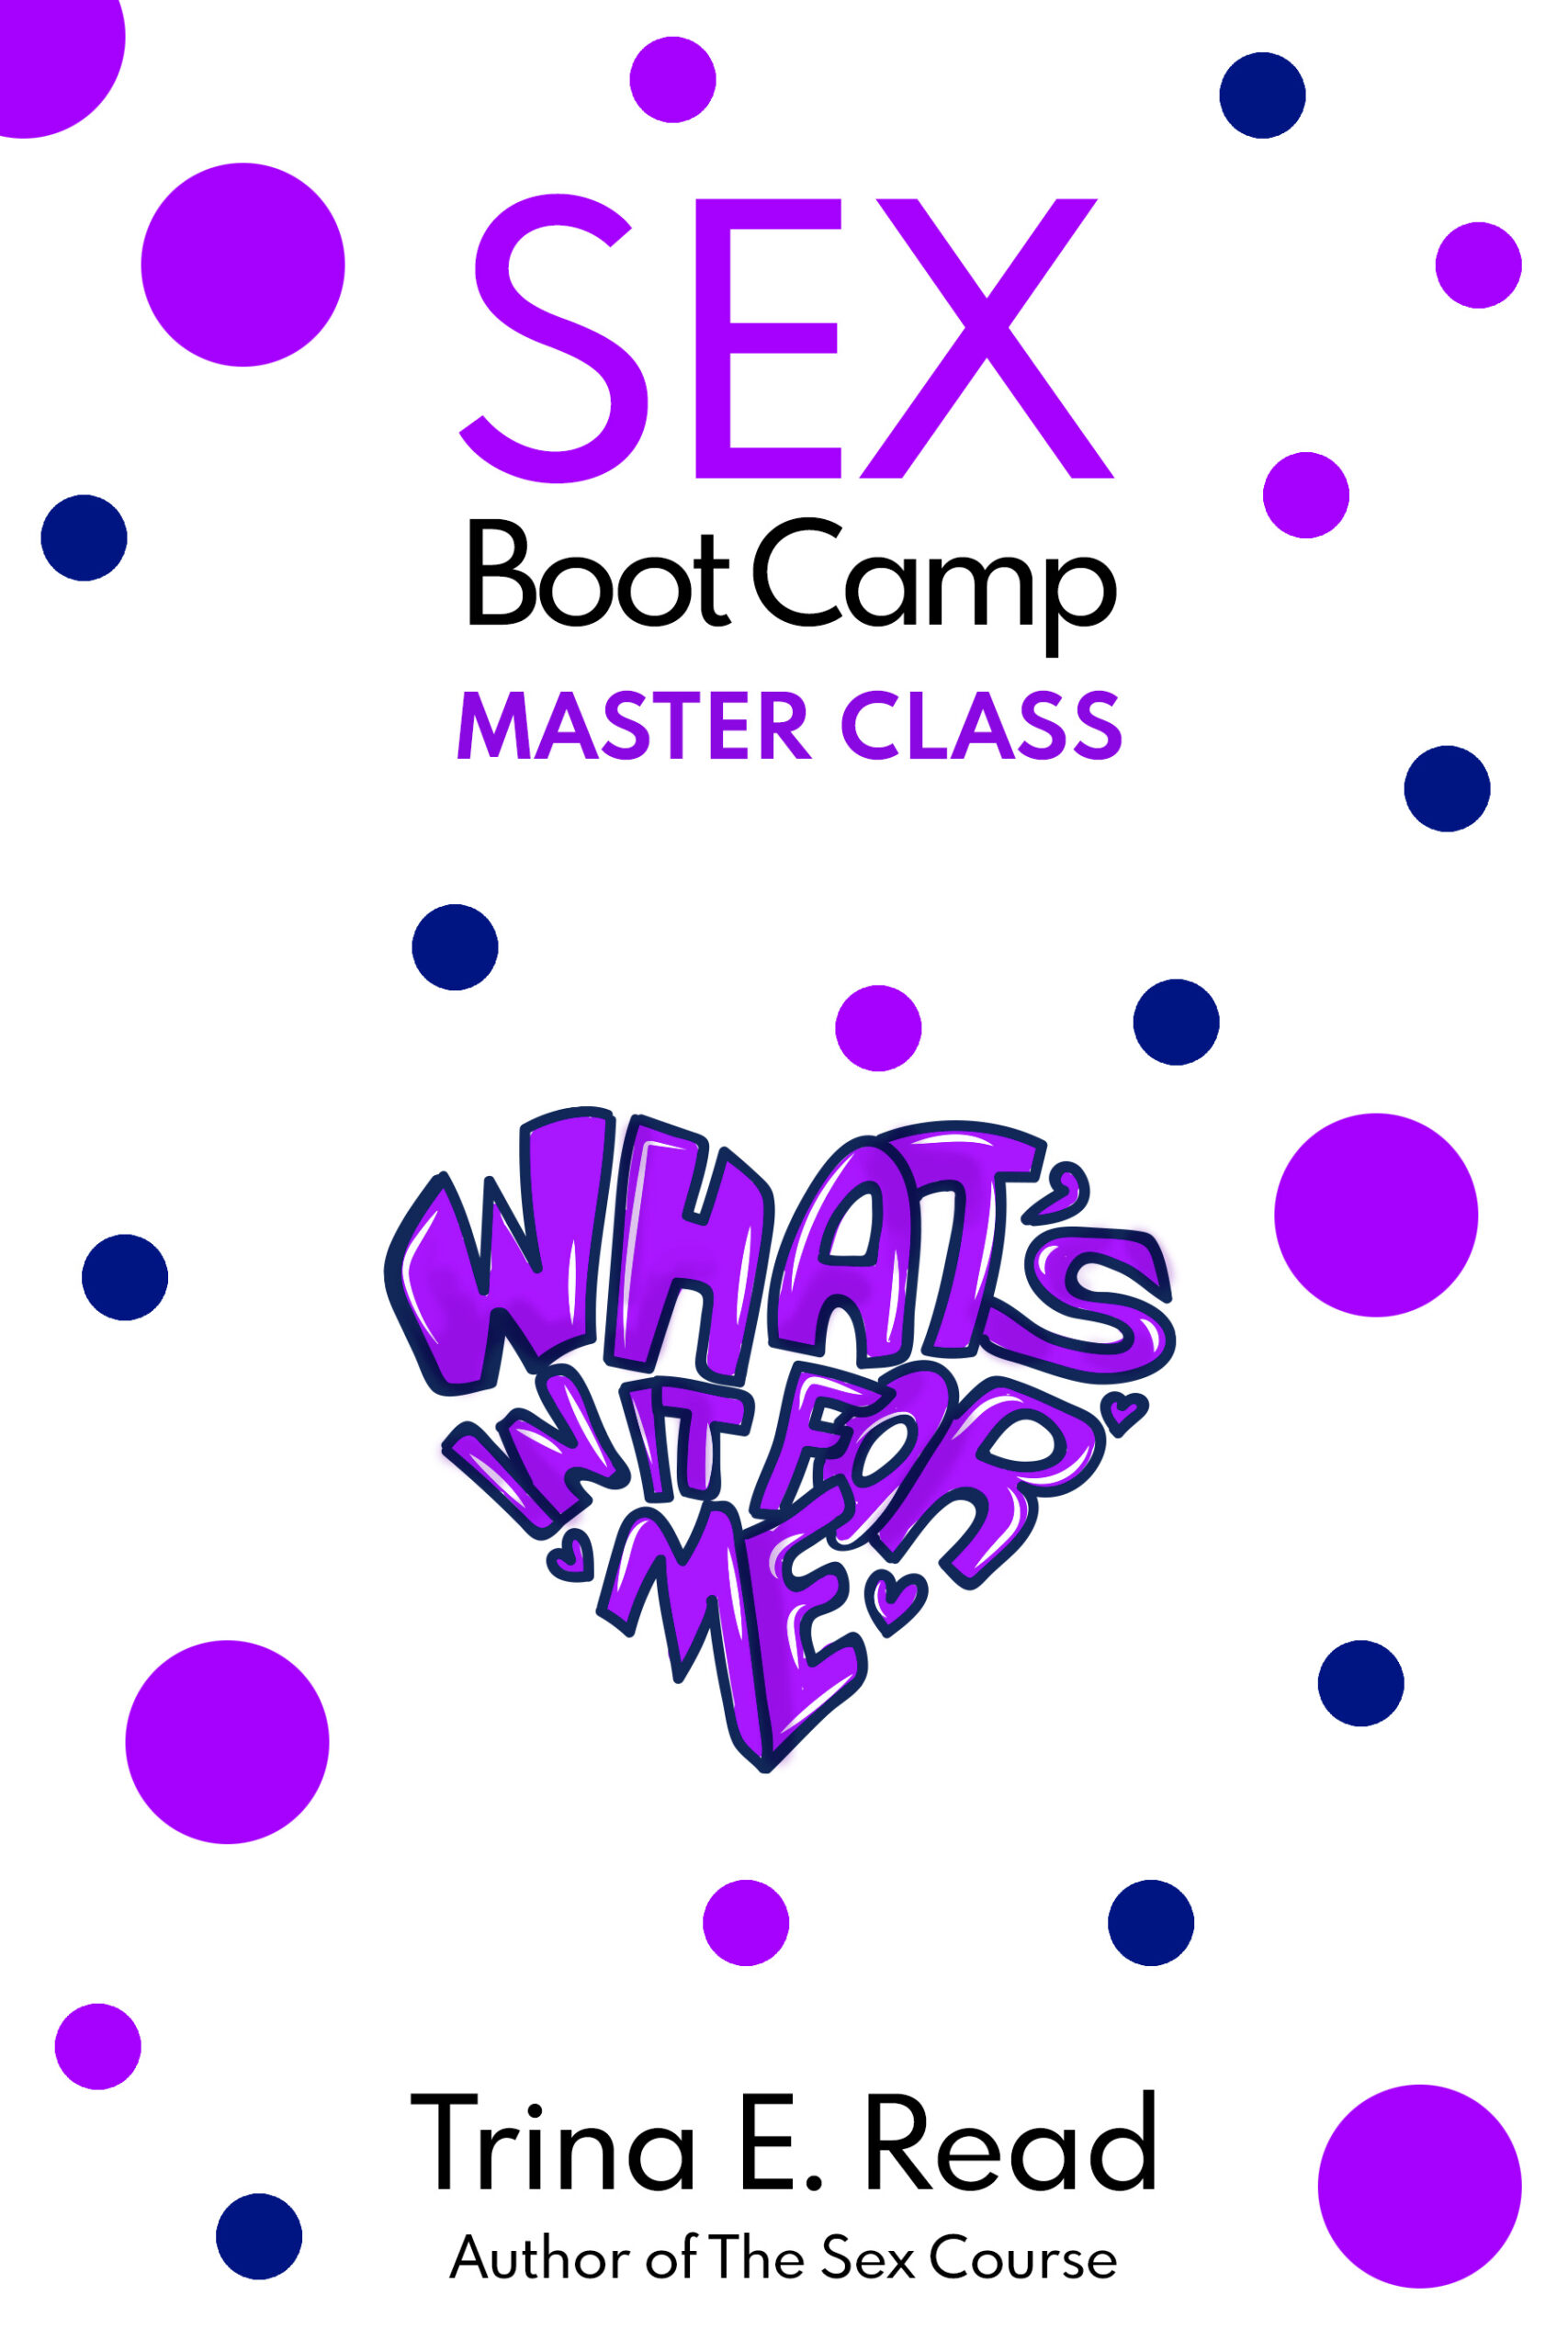 Sex Boot Camp Masterclass